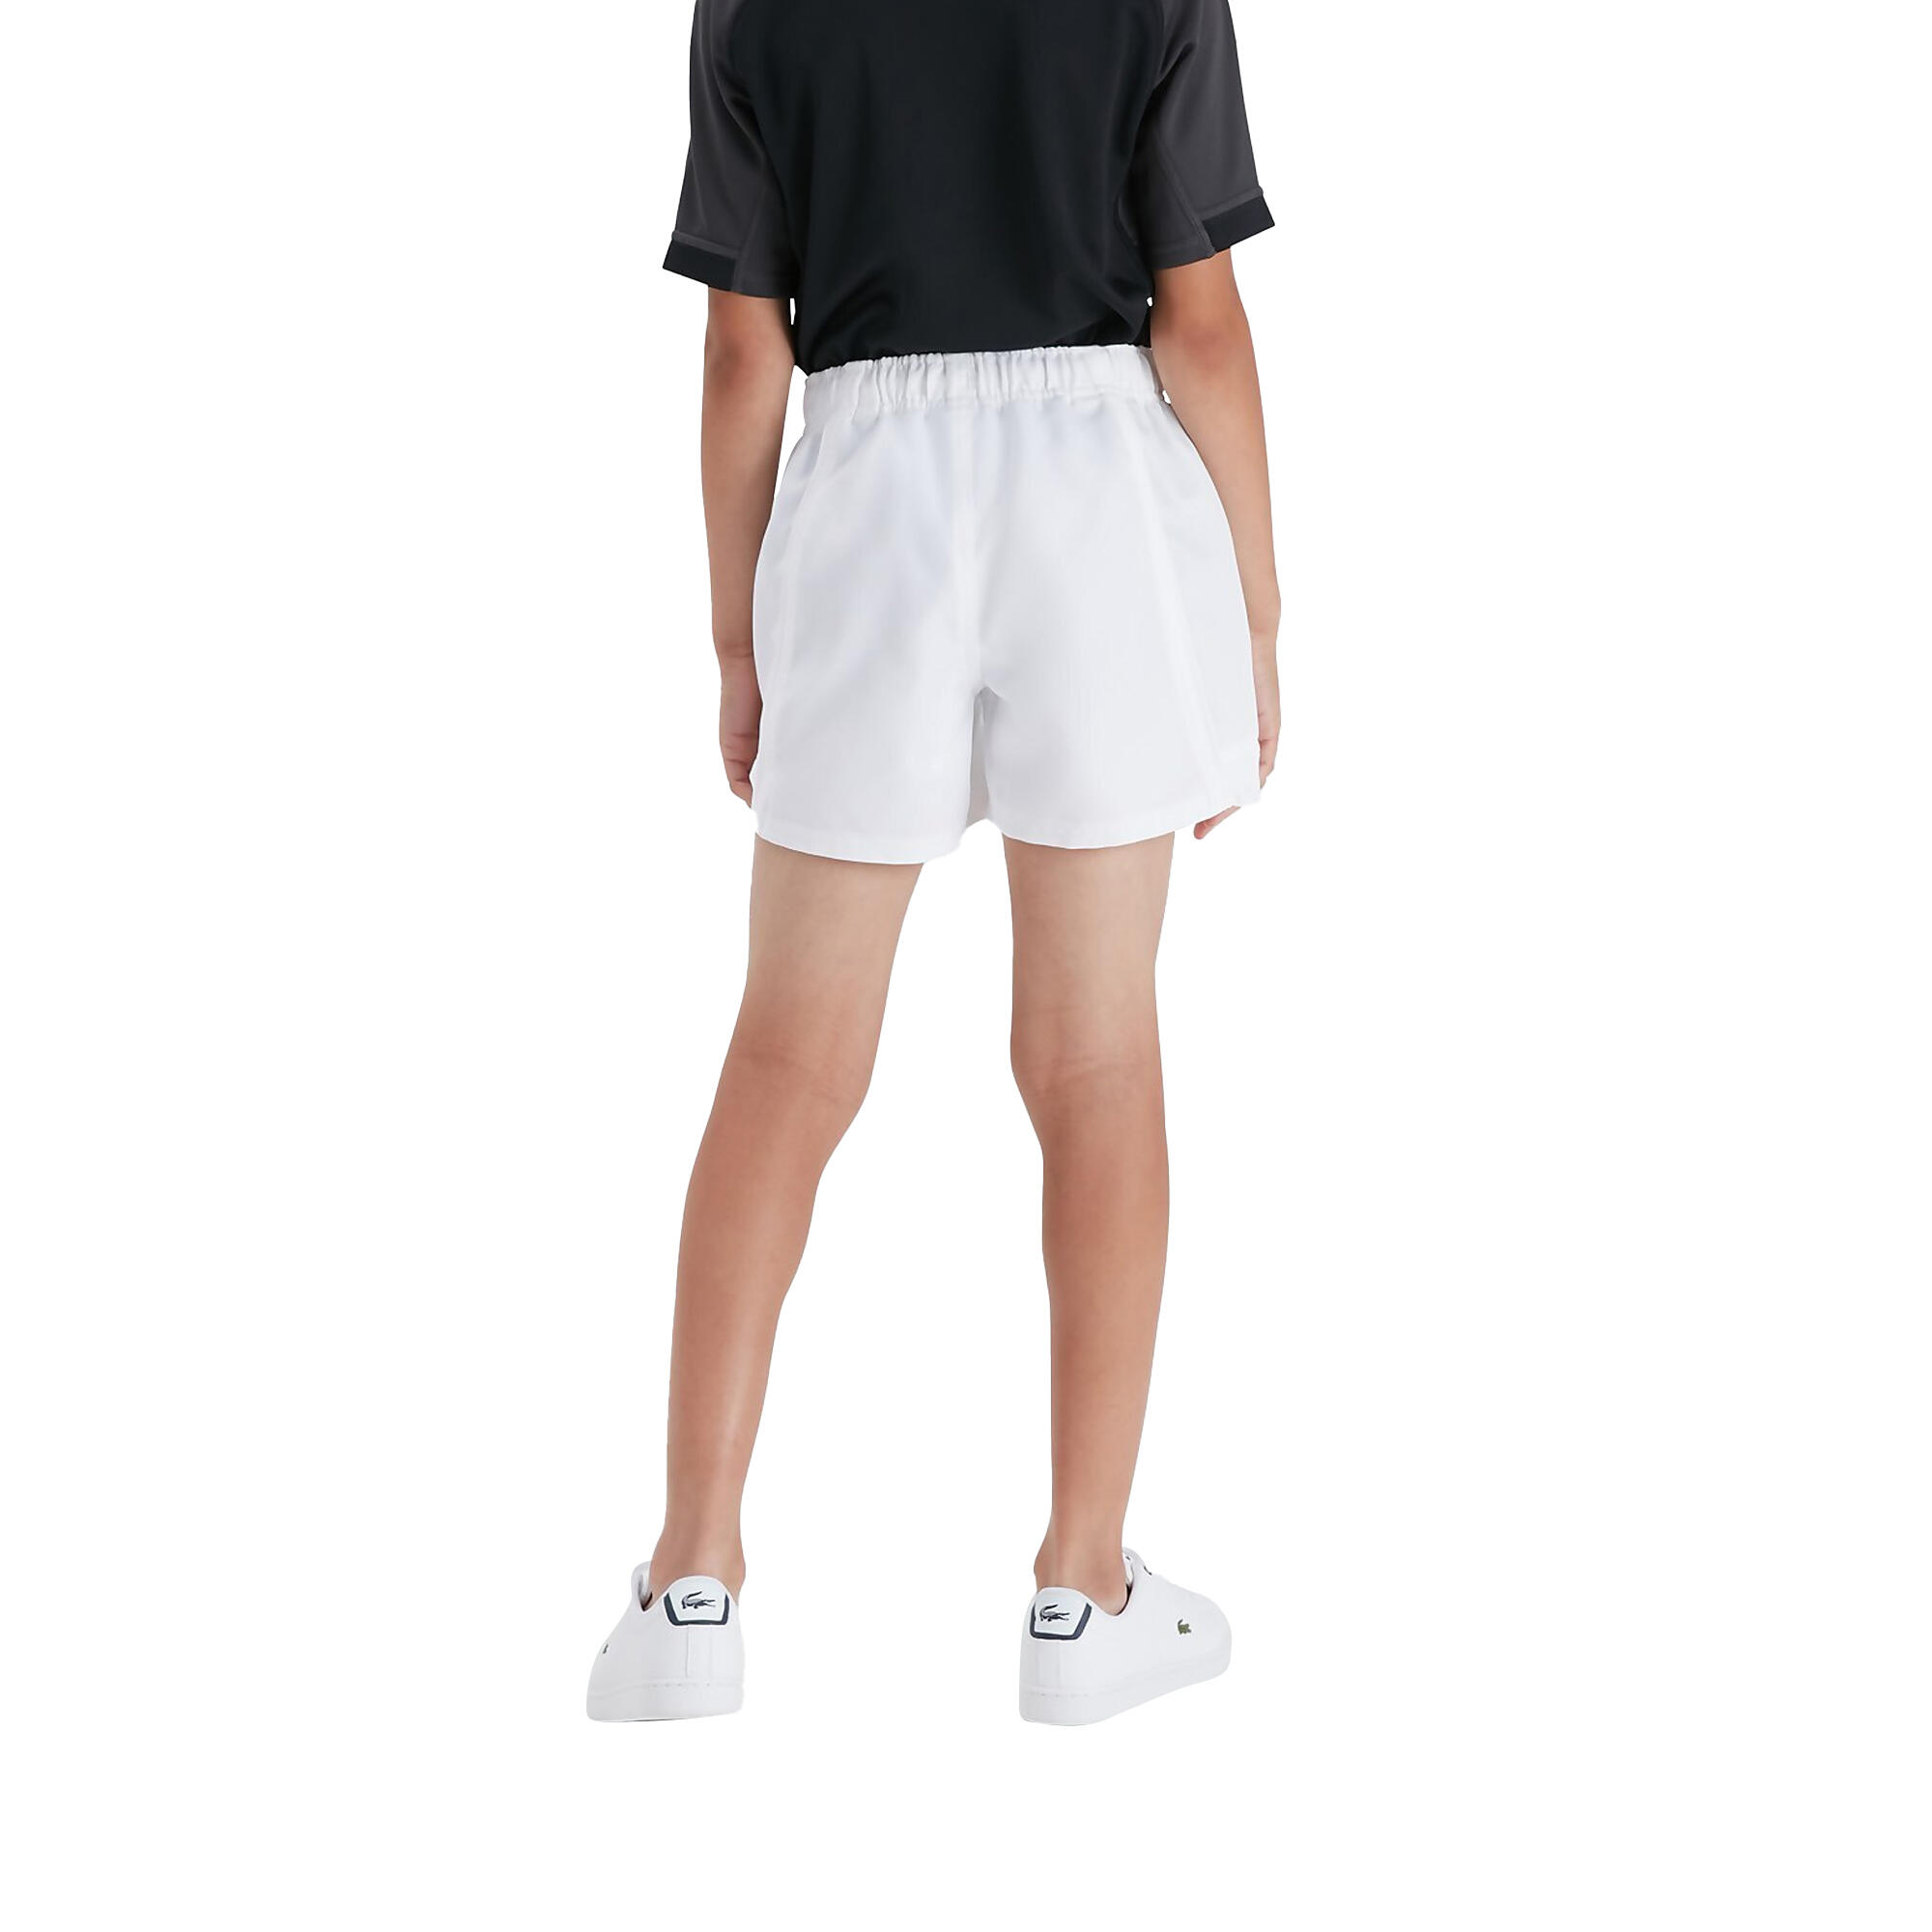 Childrens/Kids Advantage Shorts (White) 4/4